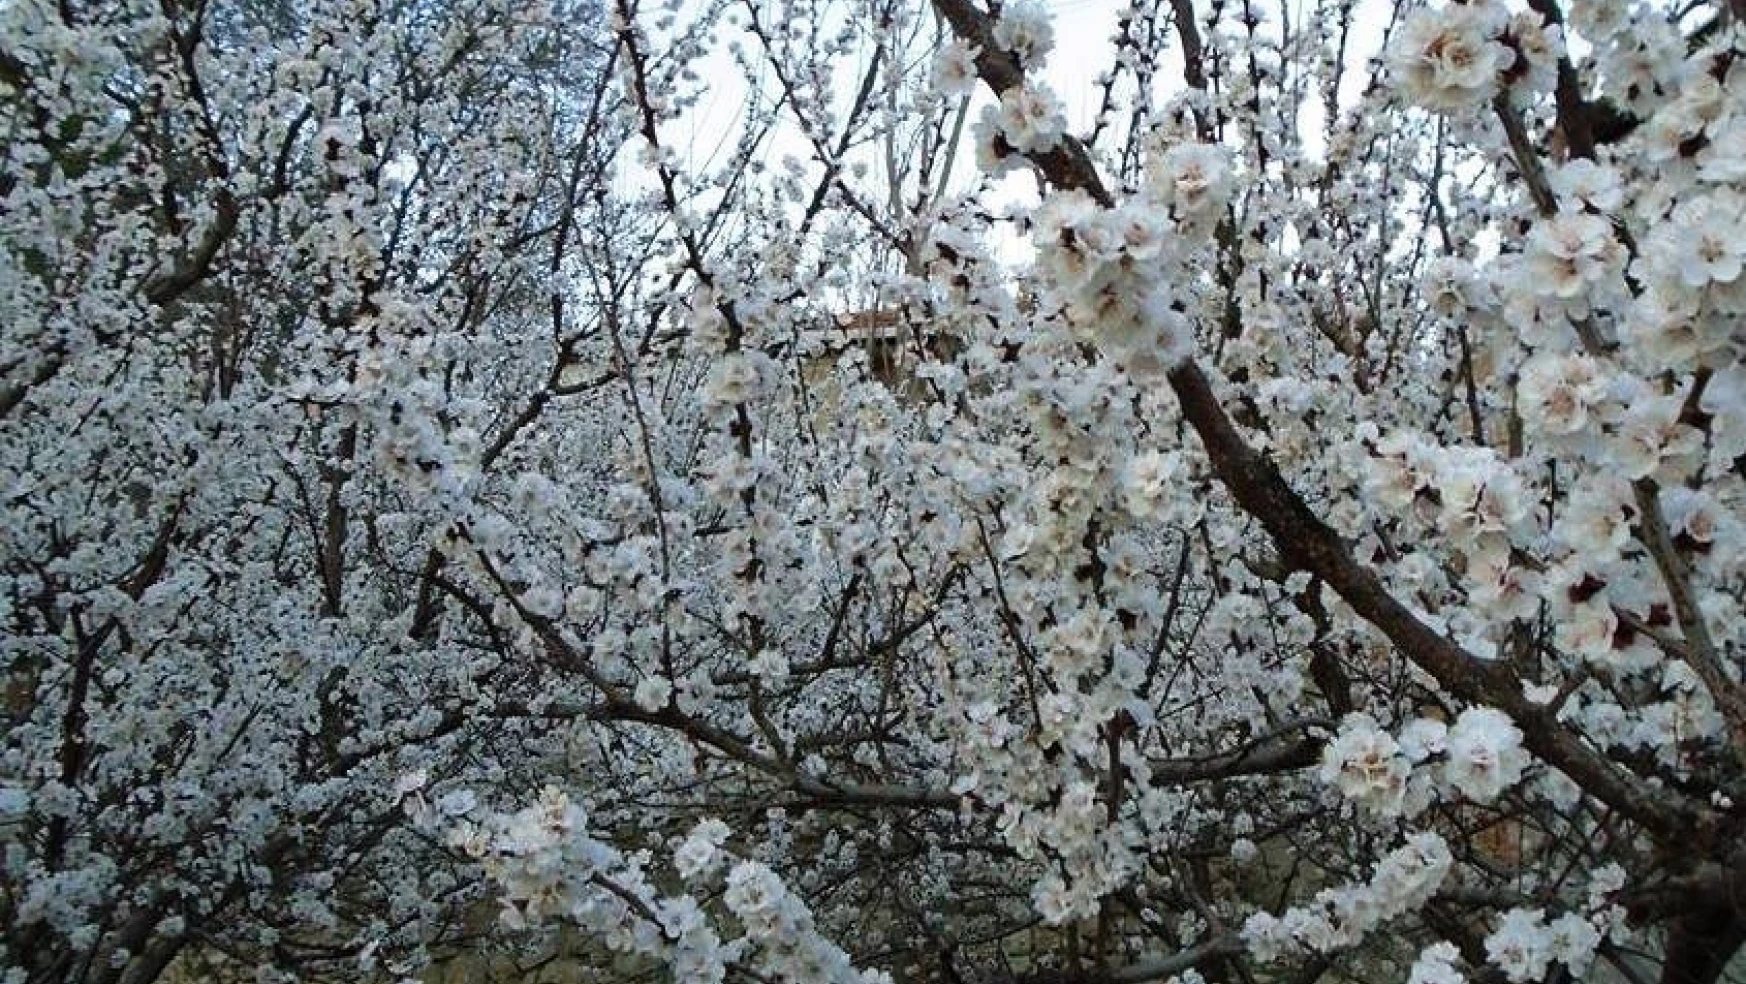 Darende'de kayısı ağaçları erken çiçek açtı, üreticiler kaygılı!